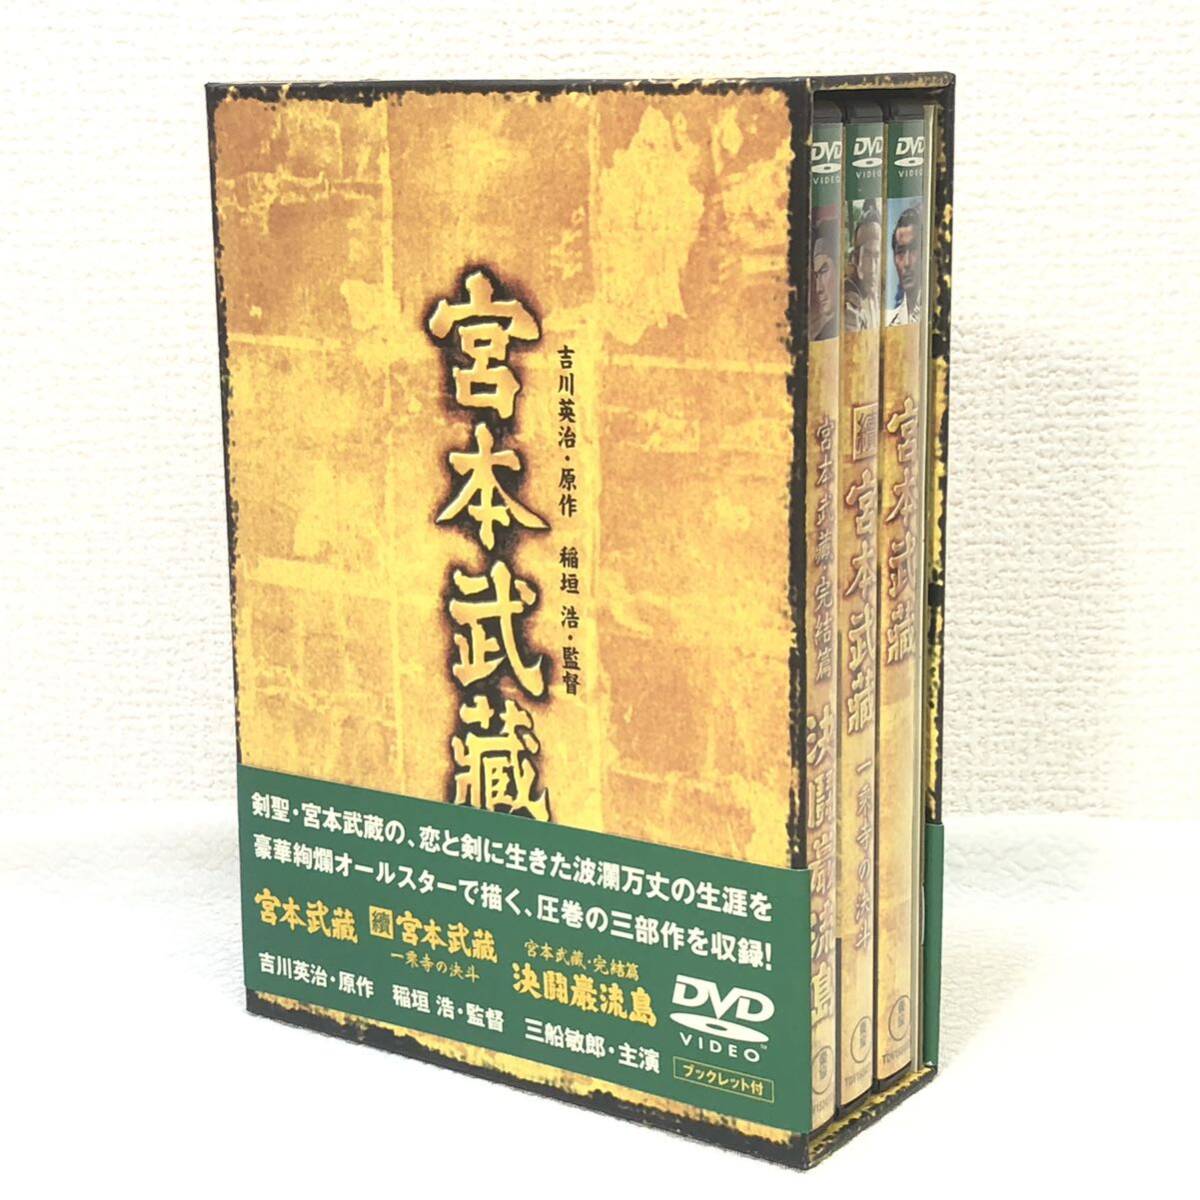  восток . Miyamoto Musashi DVD-BOX 3 часть произведение буклет есть один . храм. решение . решение ... остров оригинальное произведение Yoshikawa Eiji 